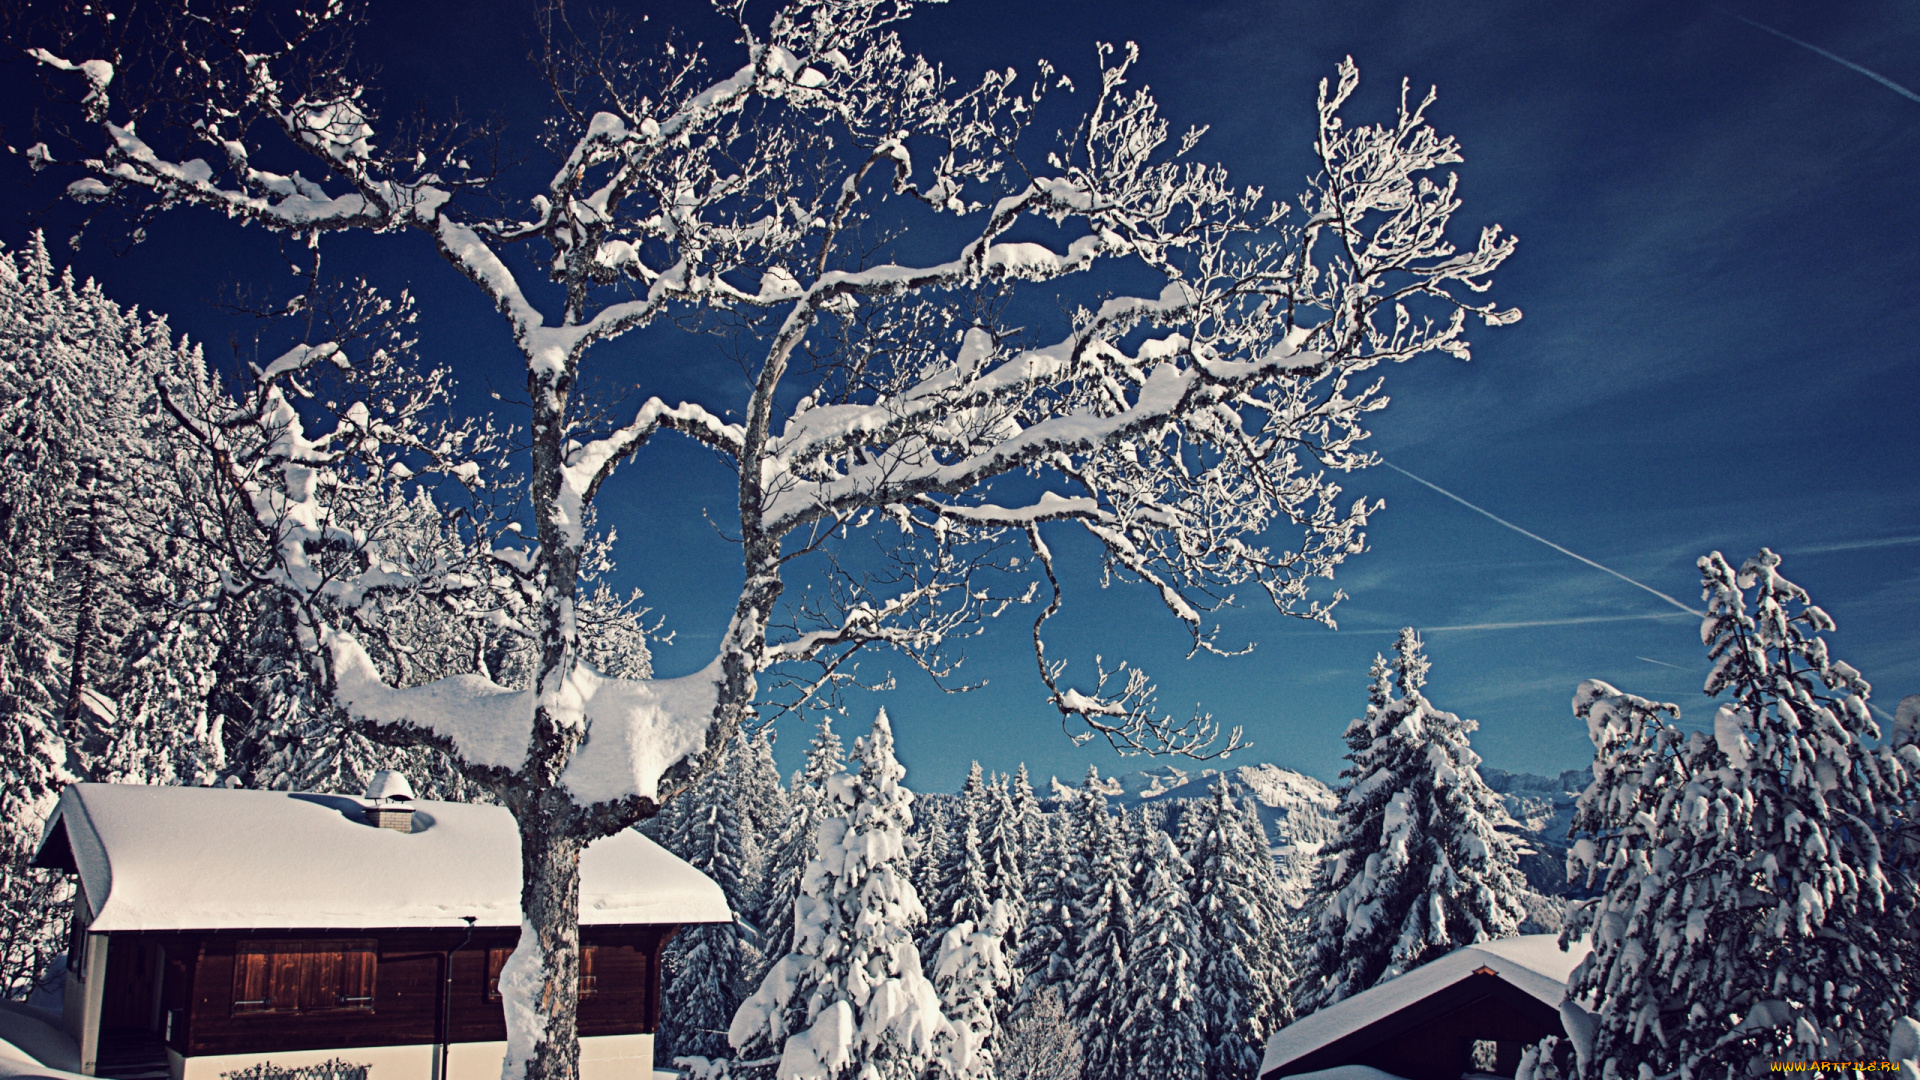 природа, зима, switzerland, швейцария, снег, деревья, ели, домики